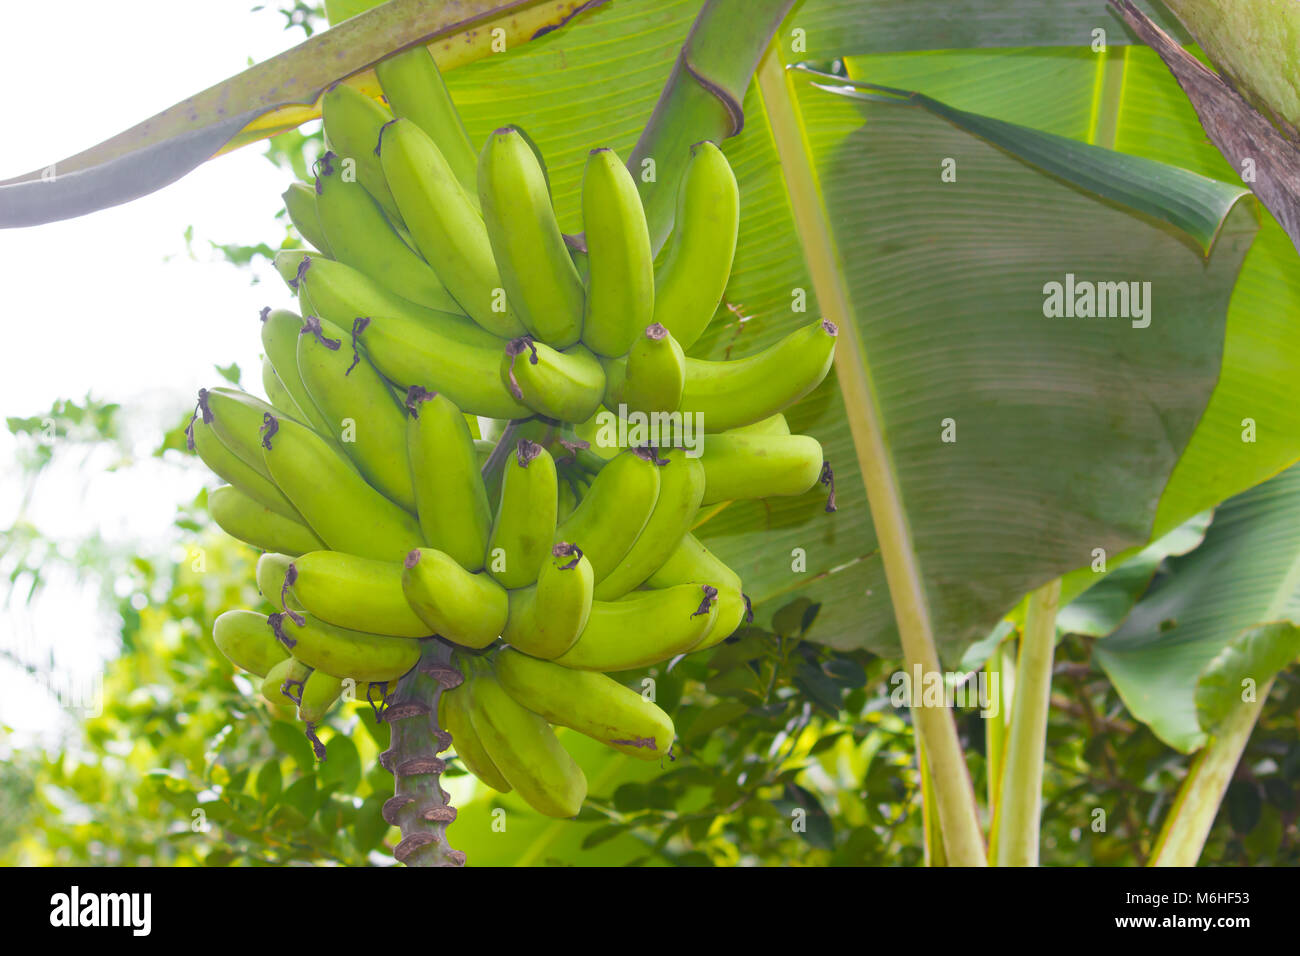 A banana é alimento de primeira necessidade e está entre os cinco mais importantes, sendo ela uma das frutas mais consumidas no mundo. Stock Photo